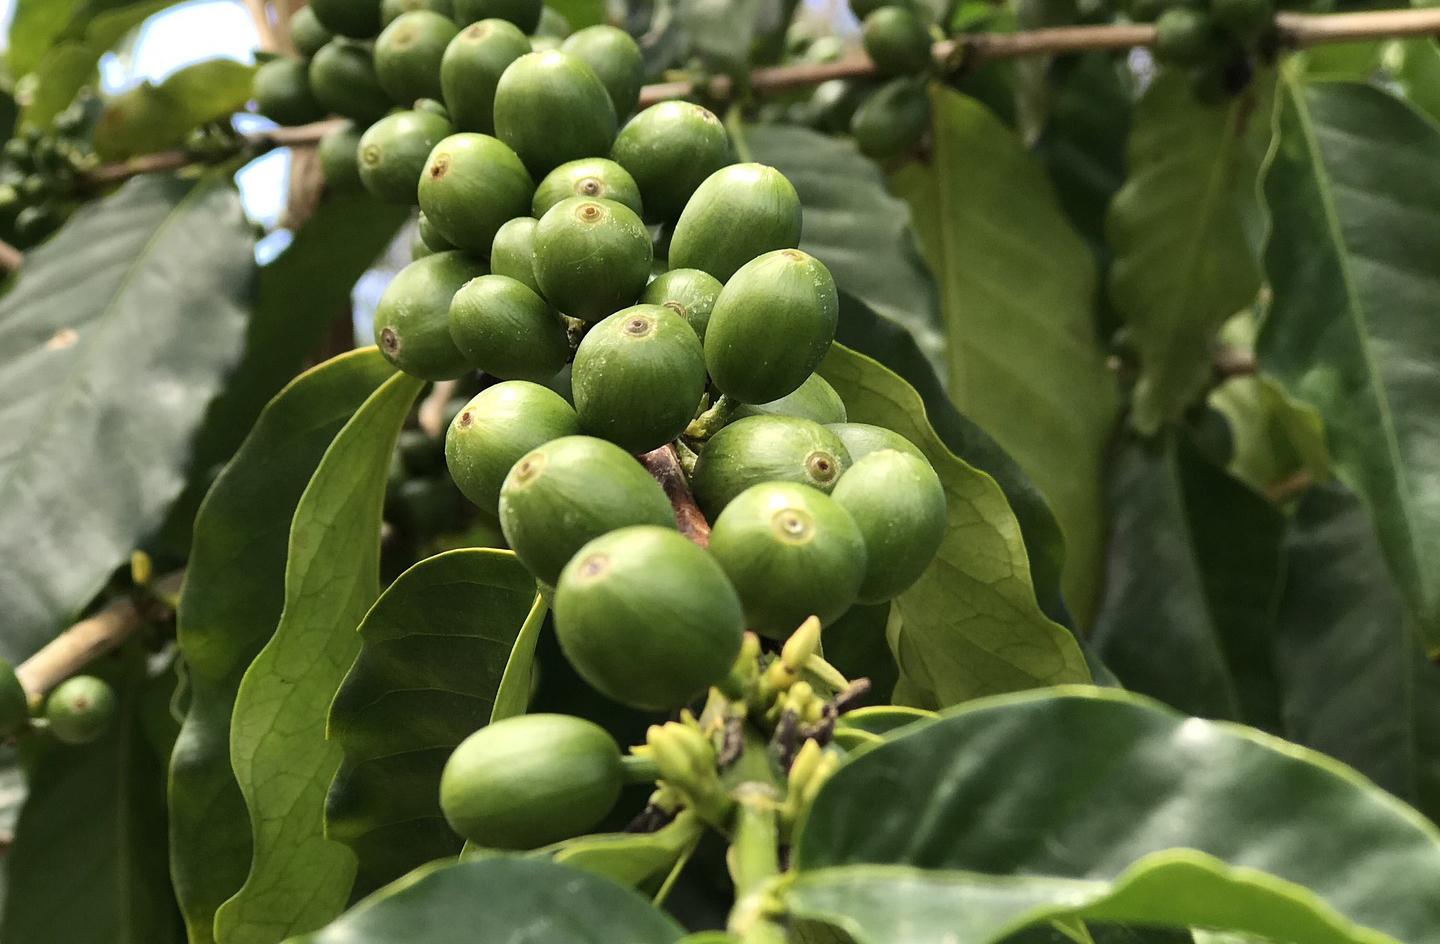 Kona coffee beans from Hawaii.